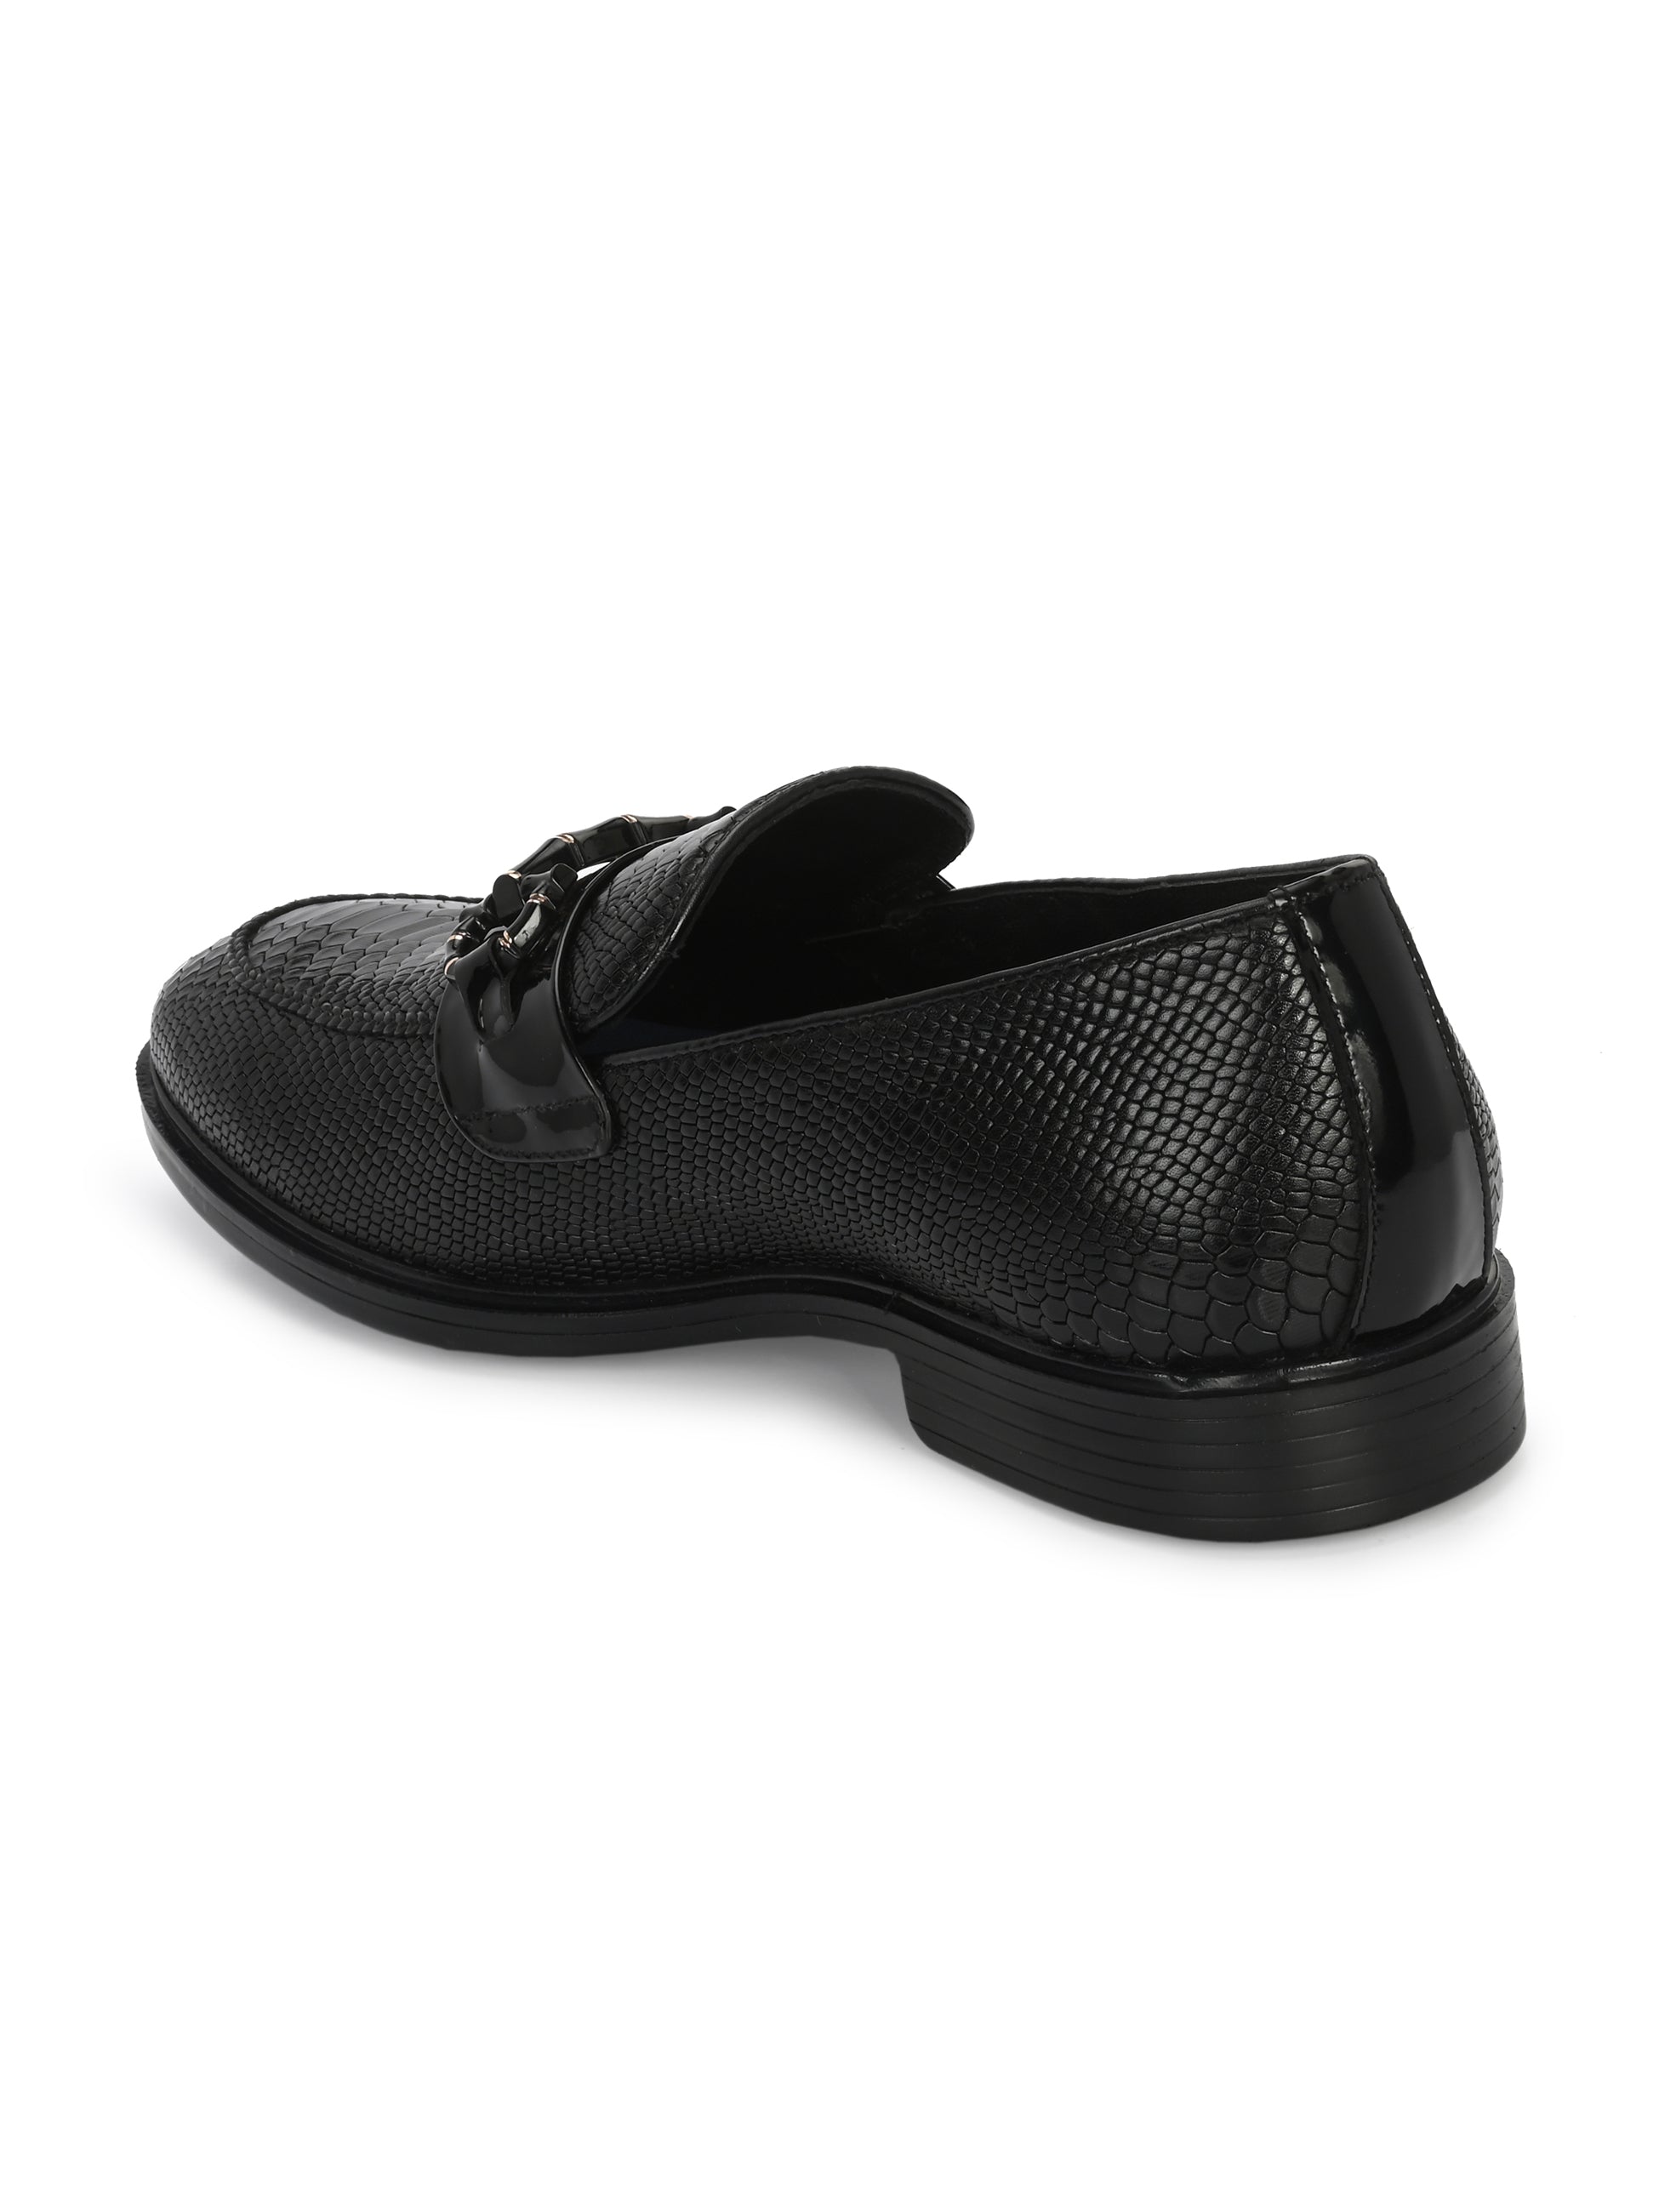 Egoss Platinum - Buckled Shoes For Men